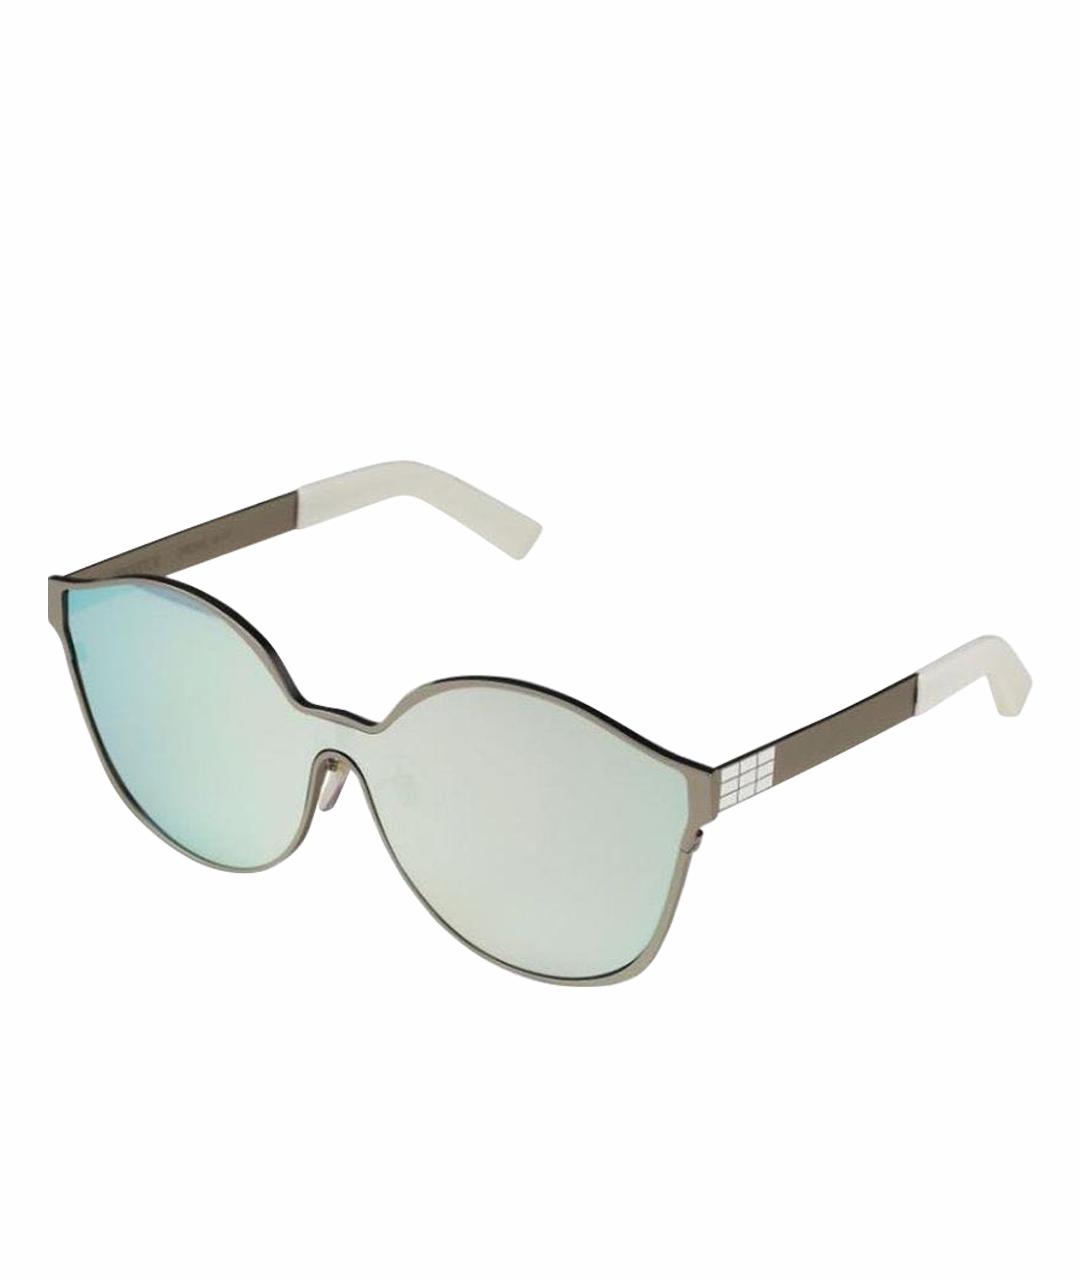 IRRESISTOR Серебряные металлические солнцезащитные очки, фото 1